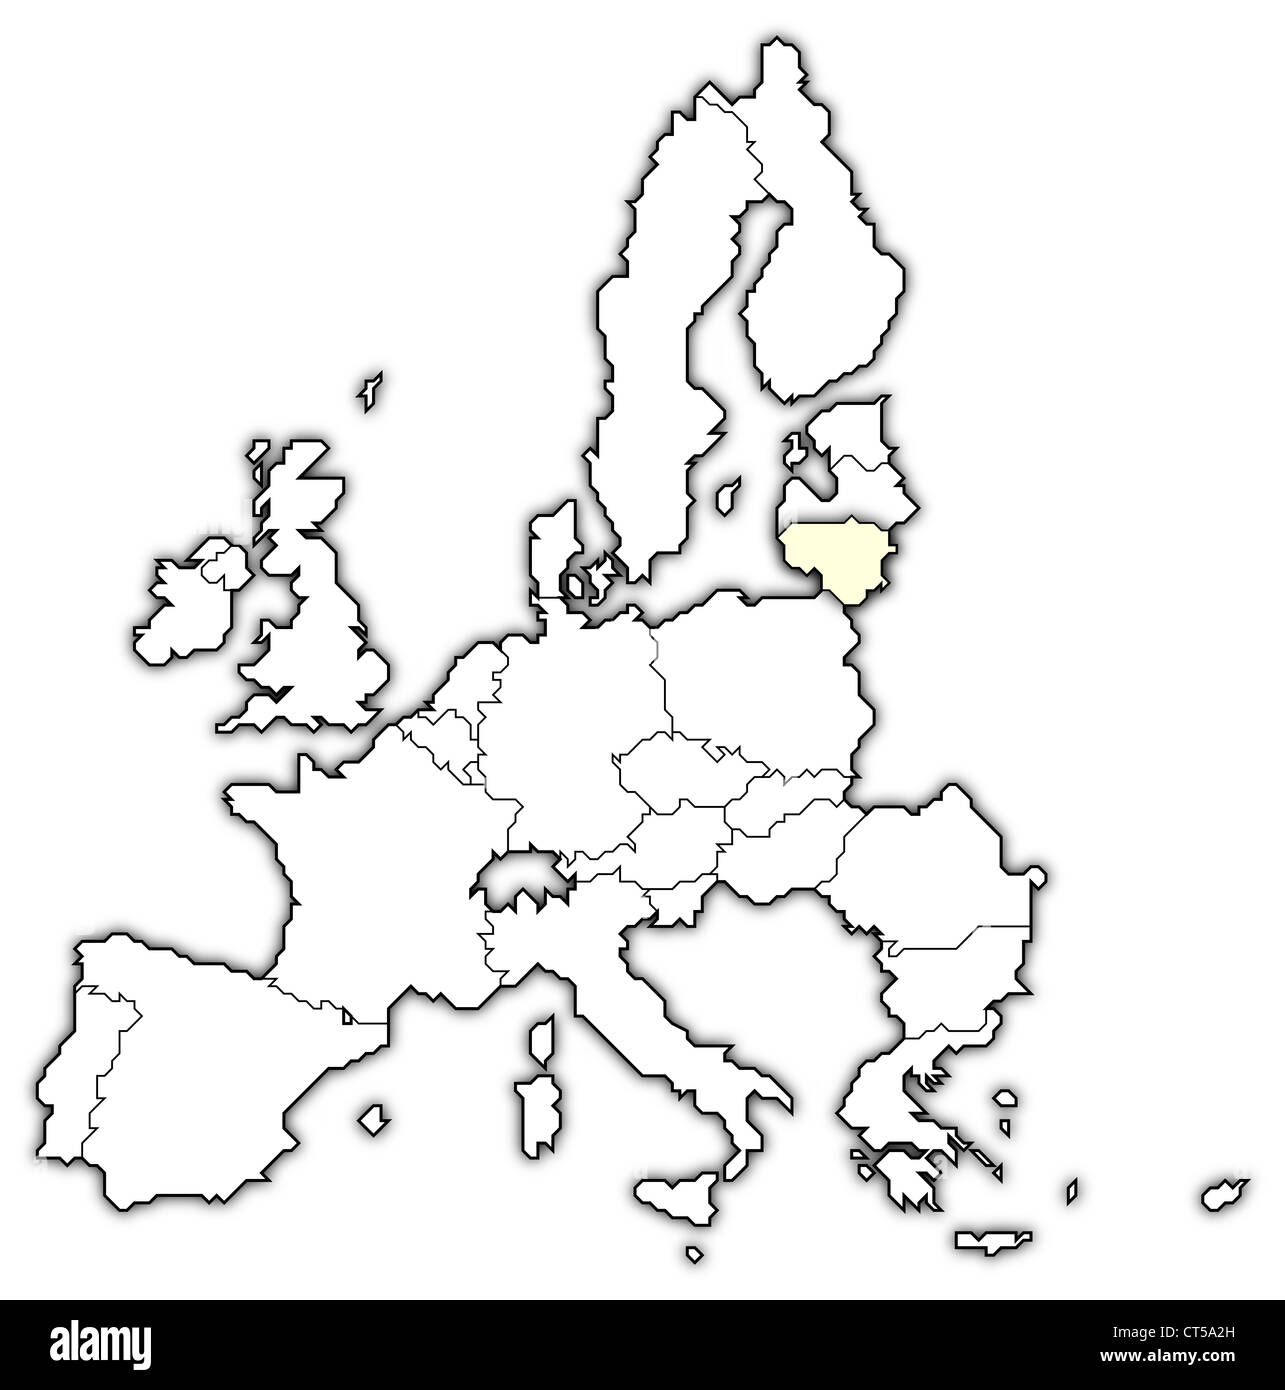 mapa-pol-tico-de-la-uni-n-europea-con-los-diversos-estados-en-que